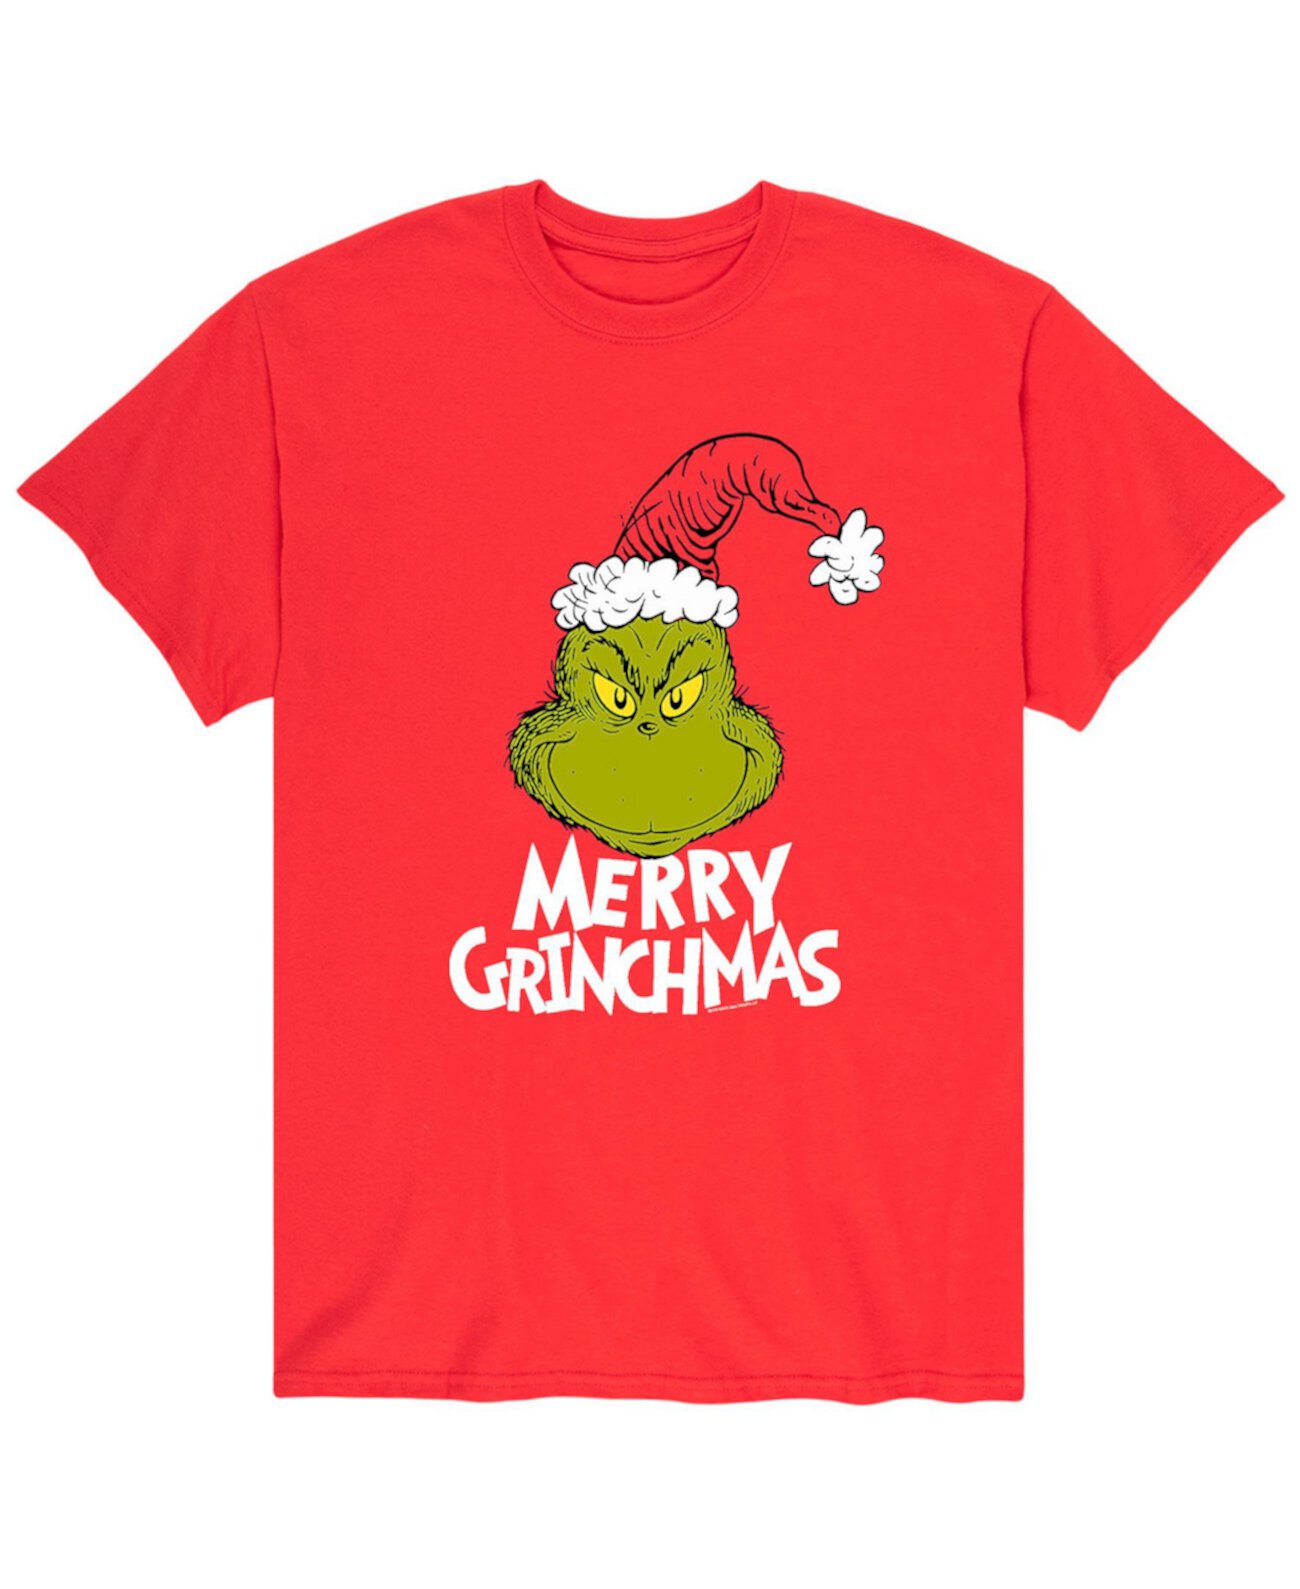 Мужская футболка Merry Grinchmas Dr. Seuss The Grinch AIRWAVES